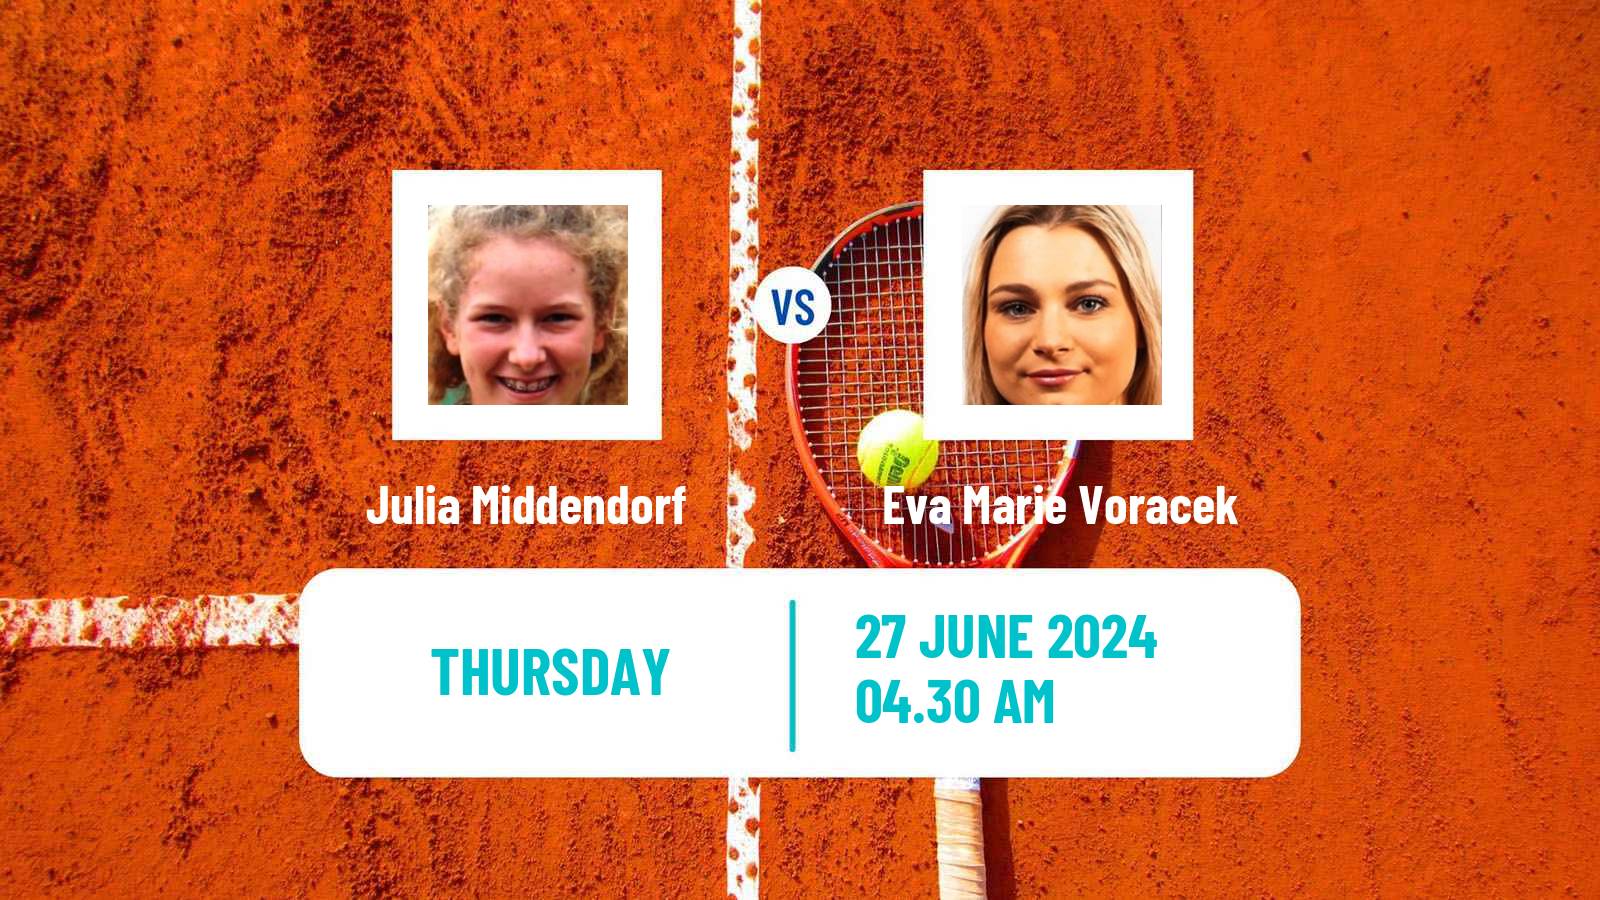 Tennis ITF W15 Kamen Women Julia Middendorf - Eva Marie Voracek